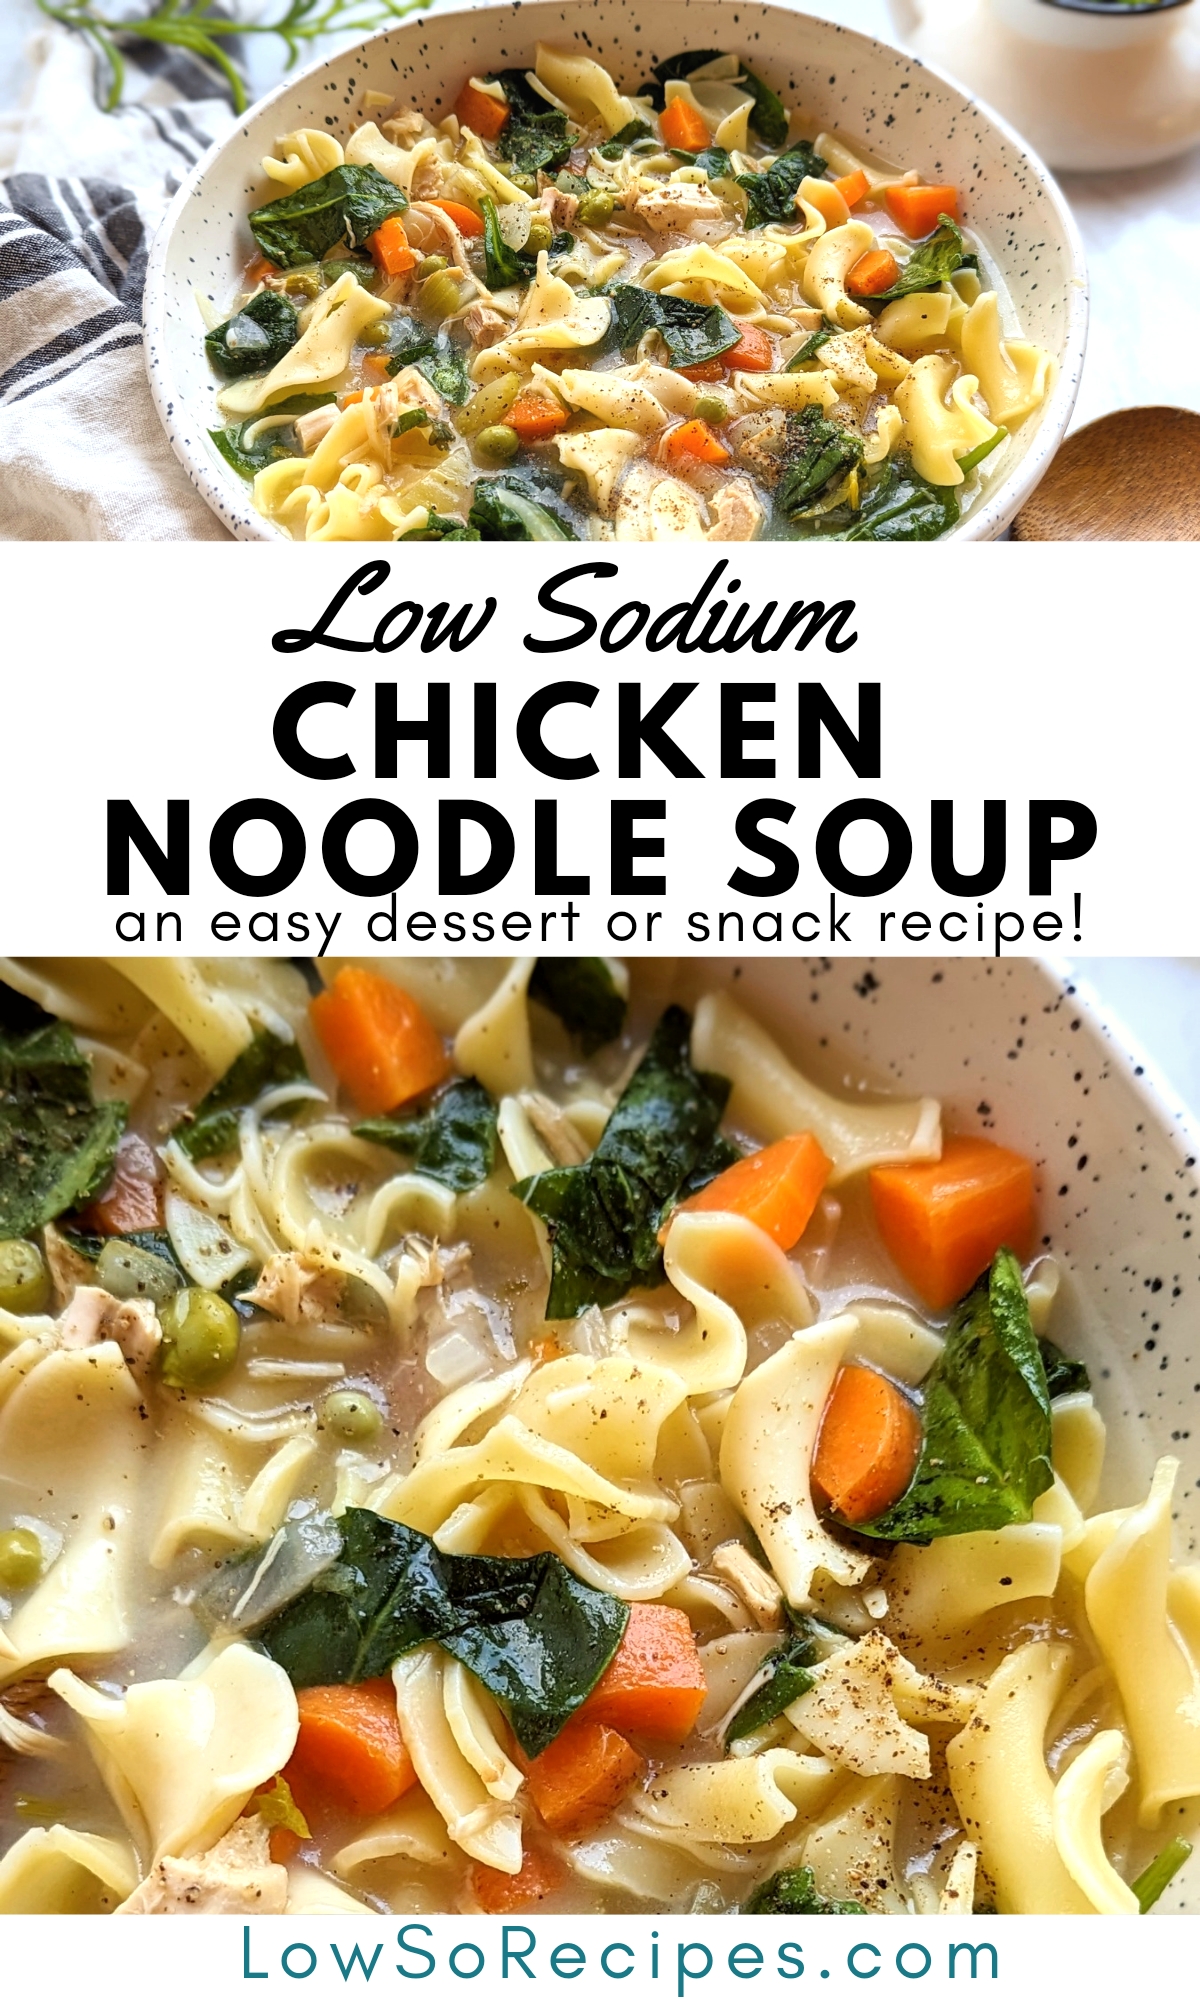 low sodium chicken noodle soup recipe low salt soup recipes heart healthy chicken soup with vegetables and noodles